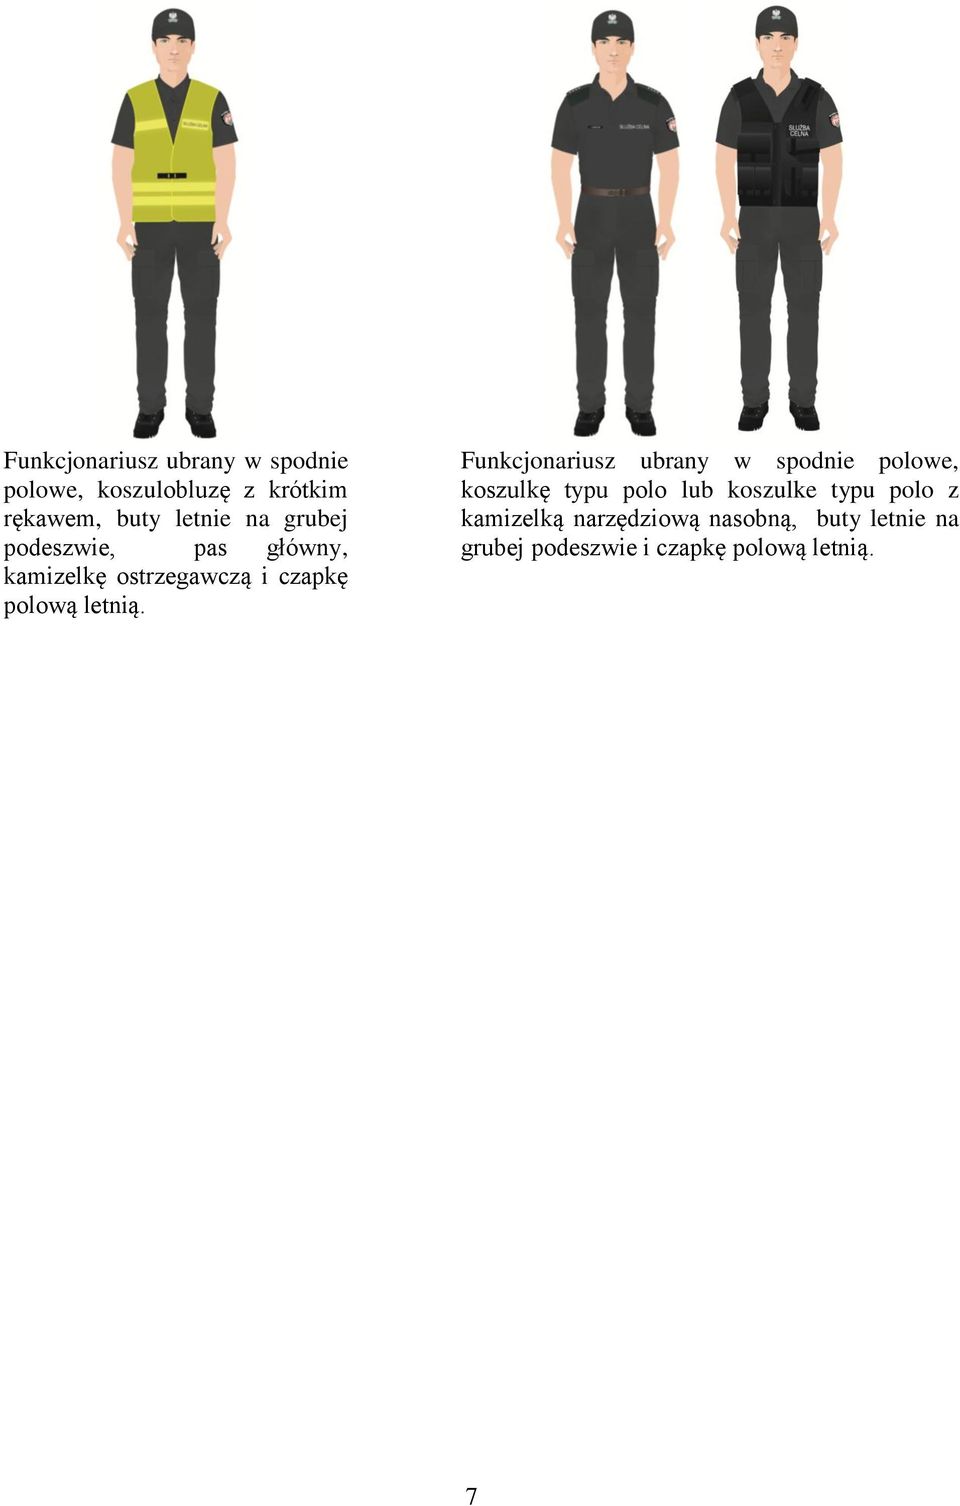 Funkcjonariusz ubrany w spodnie polowe, koszulkę typu polo lub koszulke typu polo z